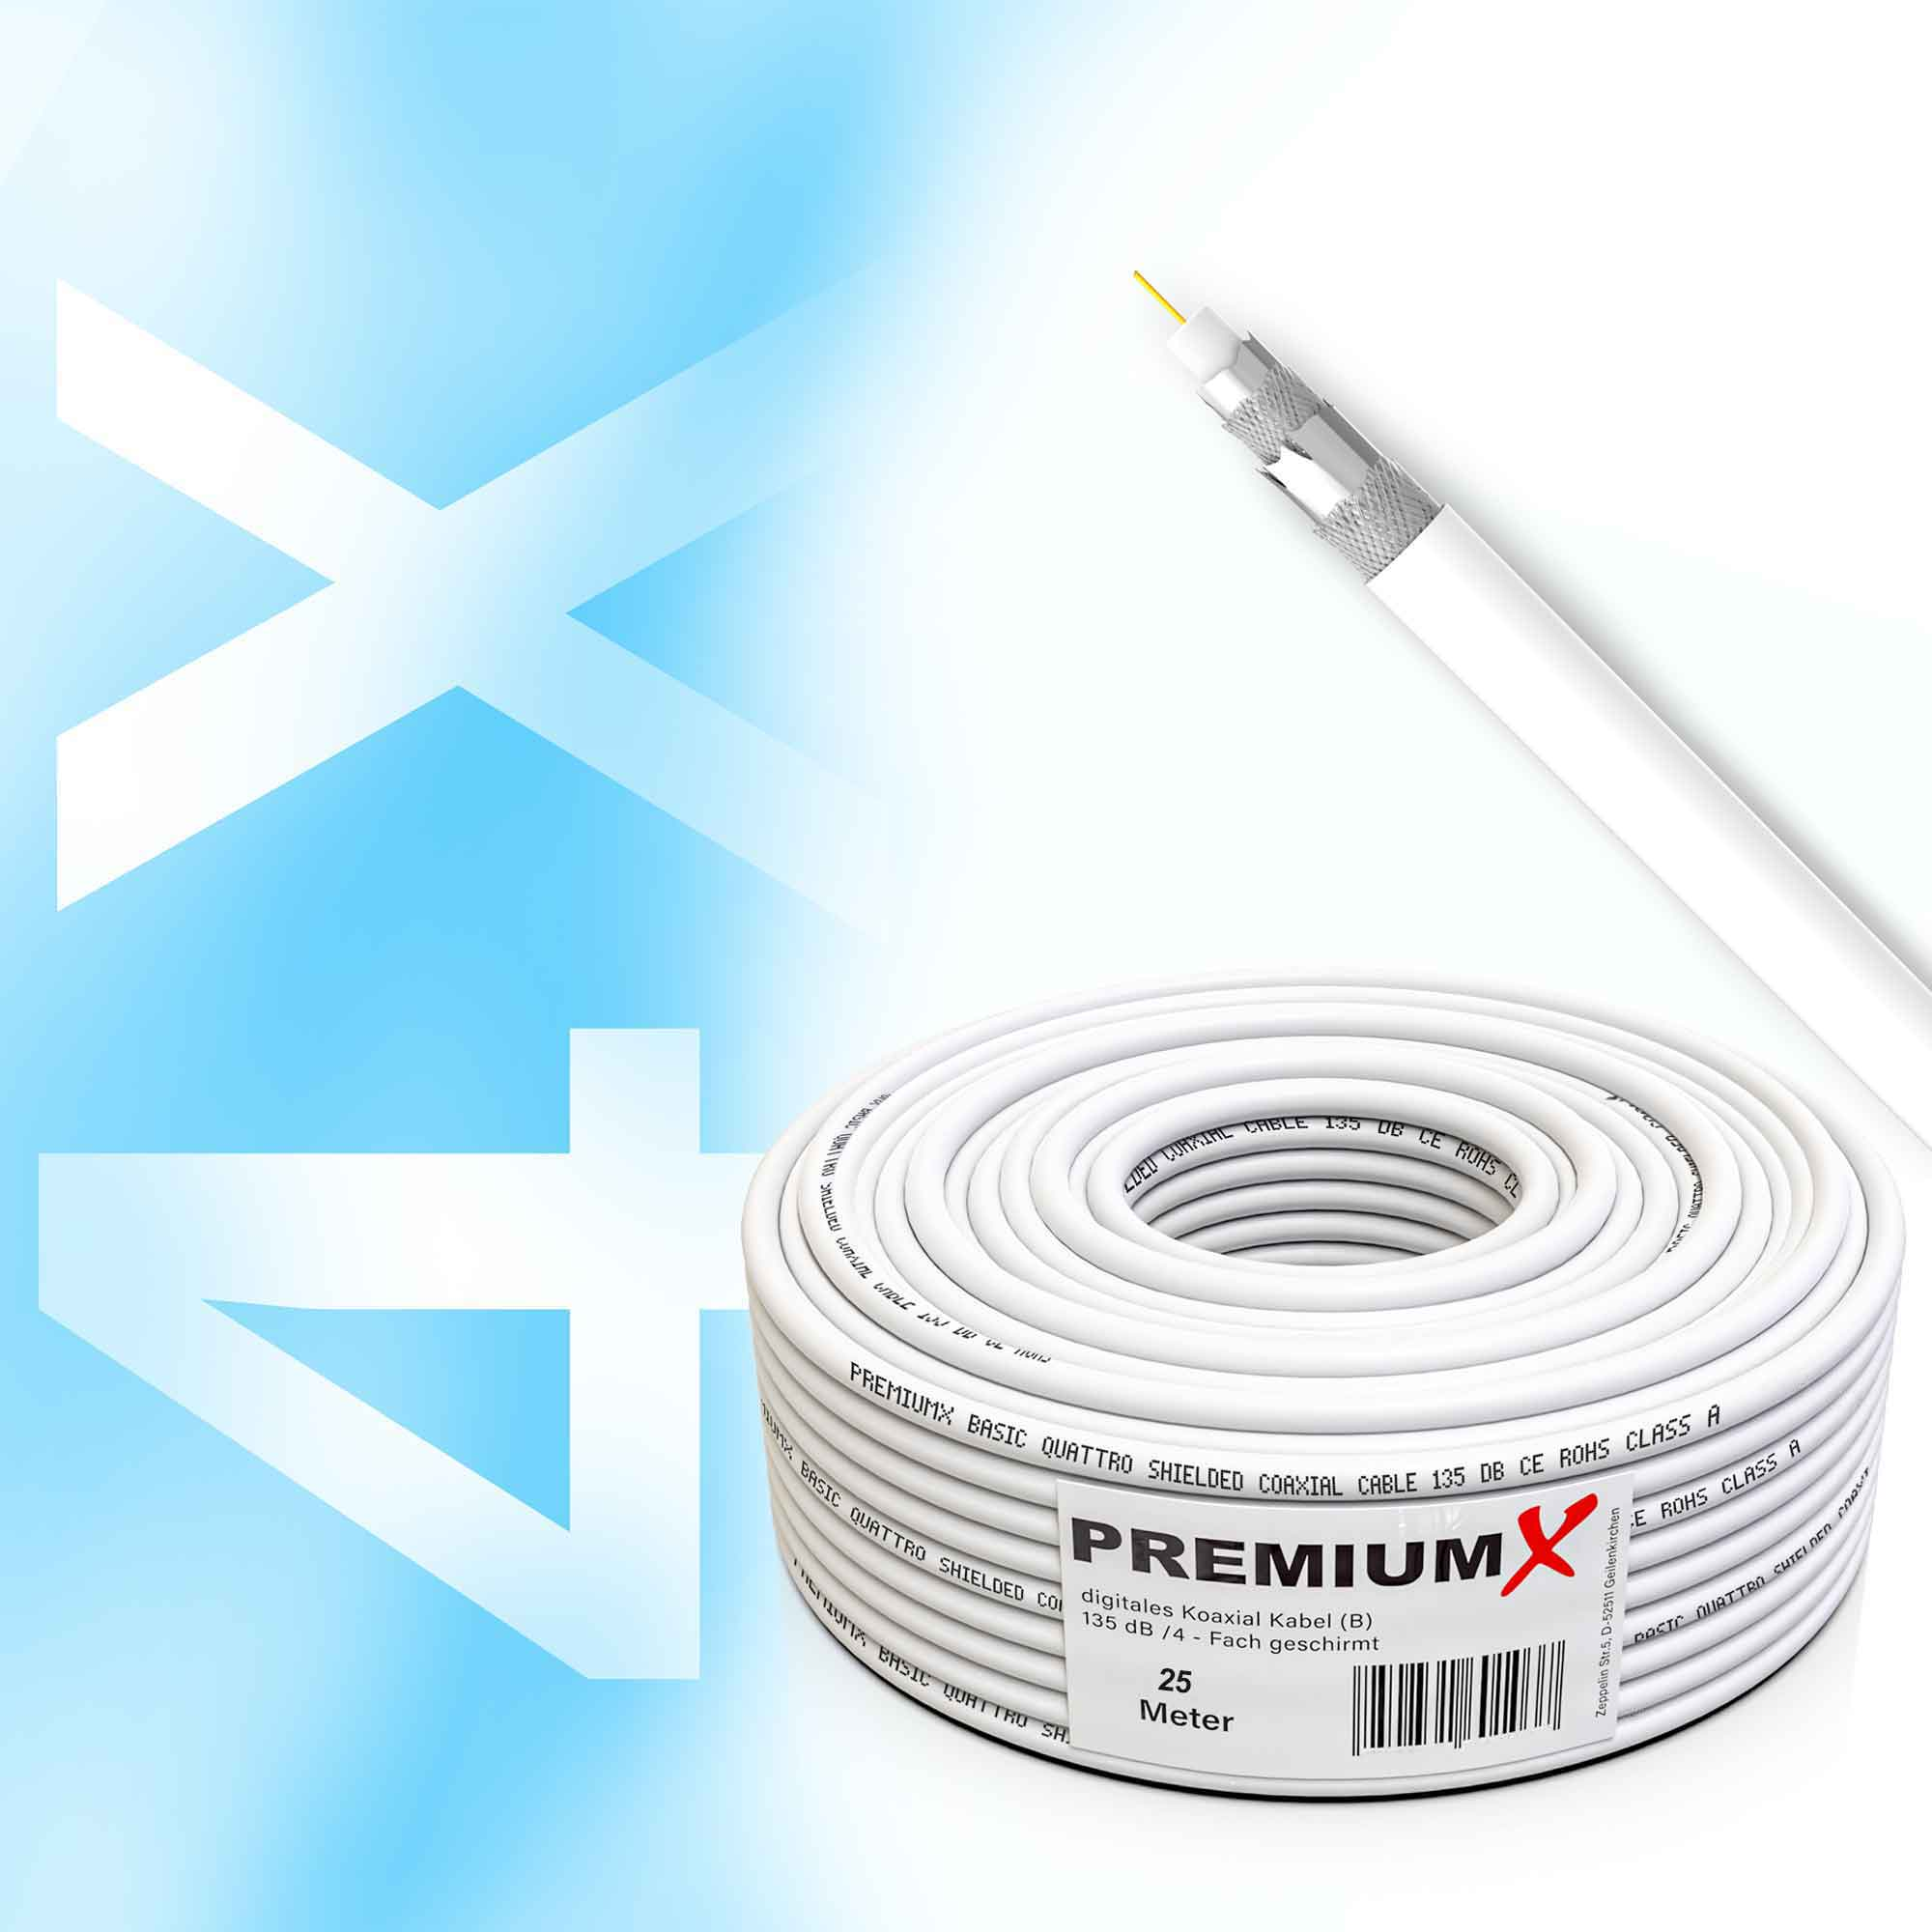 PREMIUMX 25m Koaxialkabel SAT 4-fach Kabel 135dB Antennenkabel BASIC Antennenkabel CCS